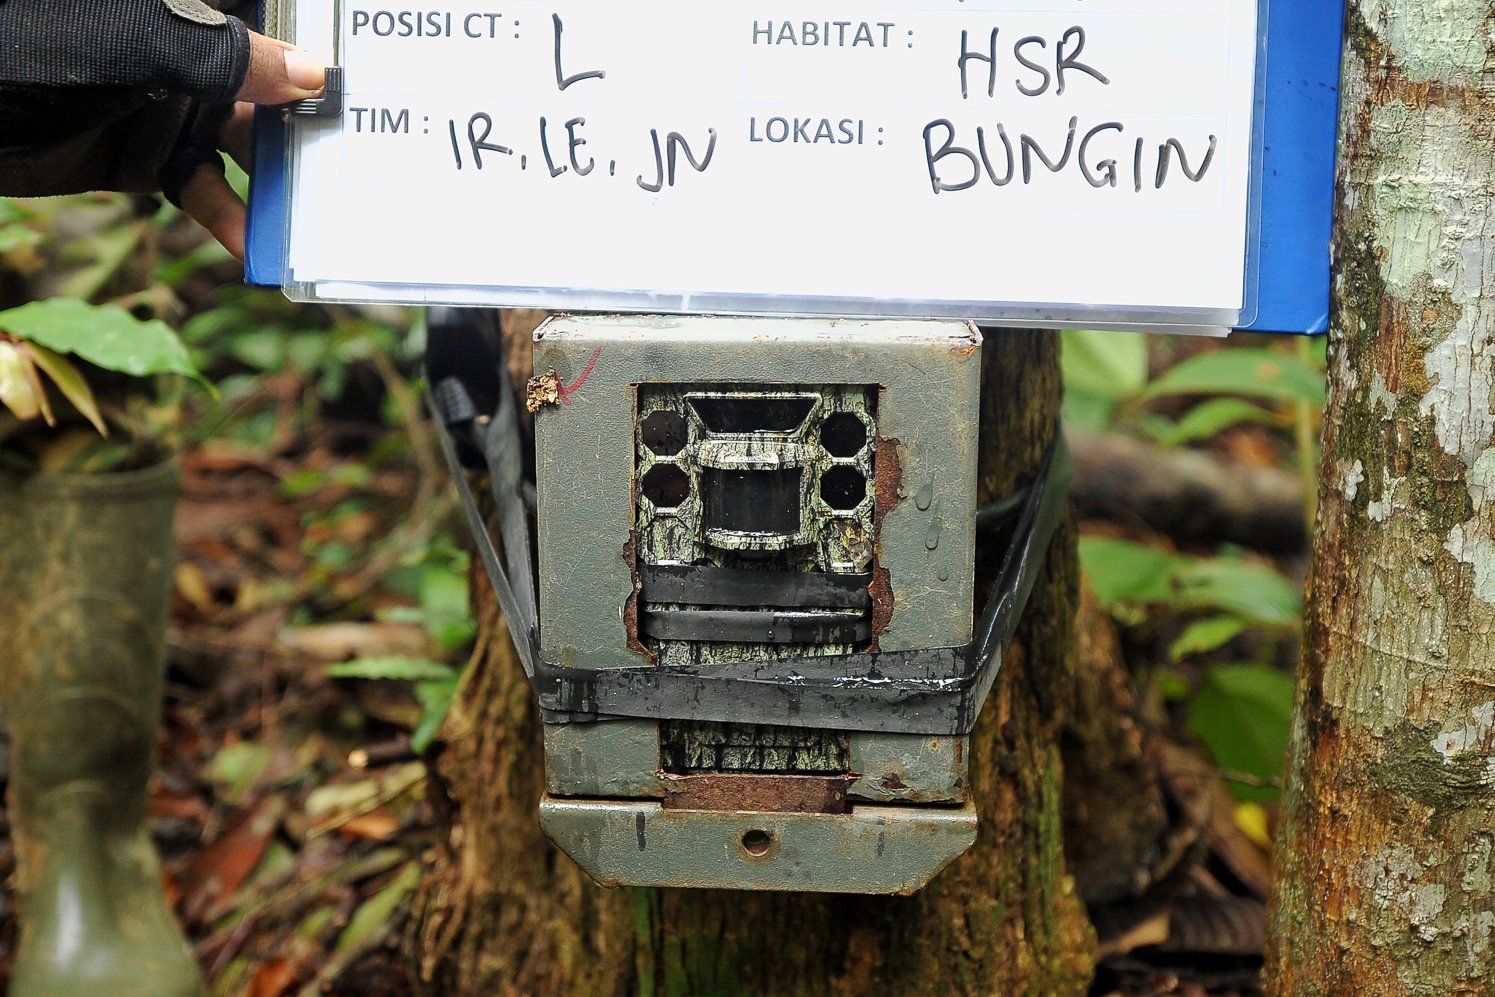 Kamera trap terpasang di batang pohon saat pemonitoran gajah di Batanghari, Jambi.